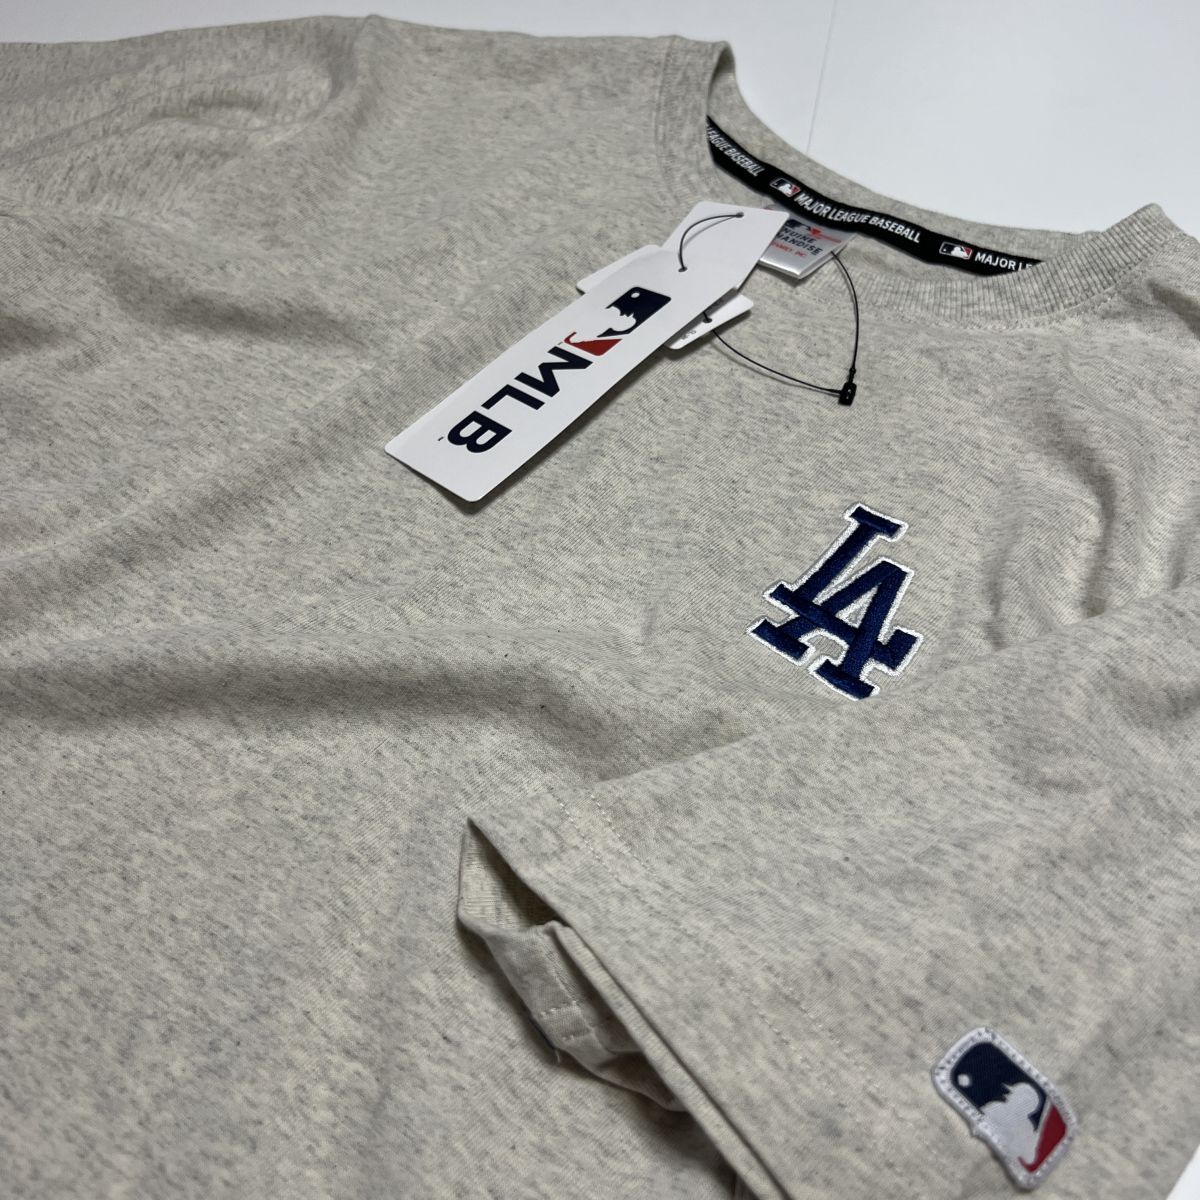 送料390円可能商品 ドジャース Dodgers MLB 新品 メンズ メジャーリーグ 大谷翔平 山本由伸 半袖 Tシャツ[C5432MR-N2-L] 一 三 弐 QWER